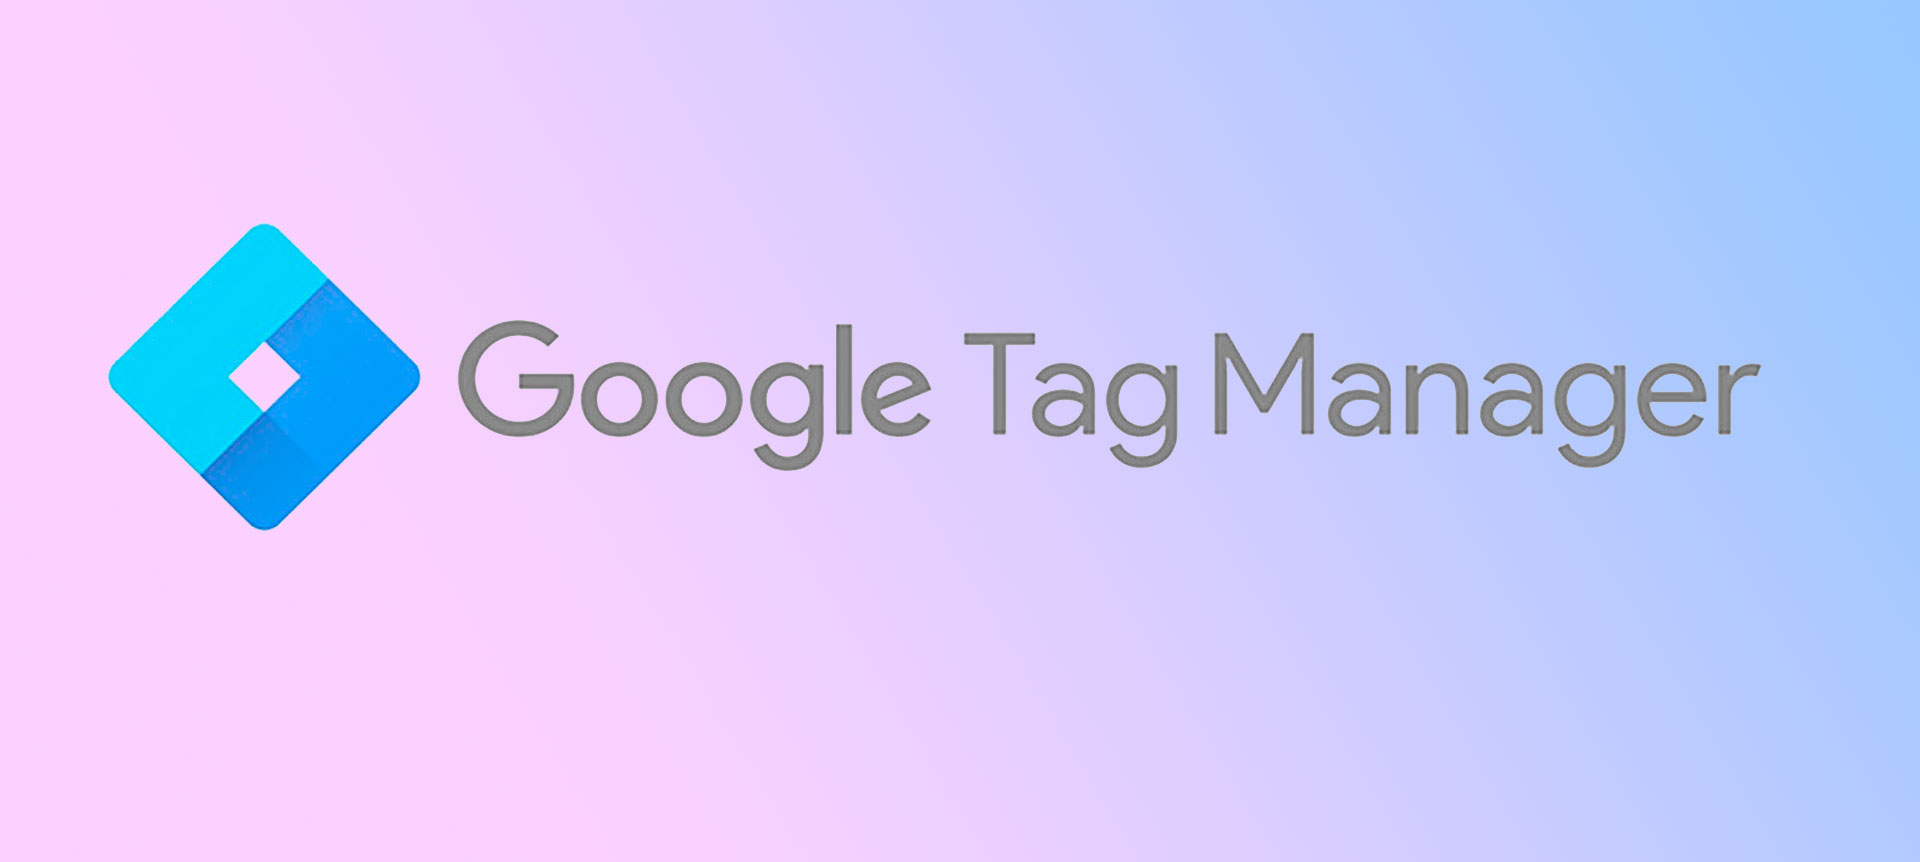 Saiba tudo sobre Google Tag Manager